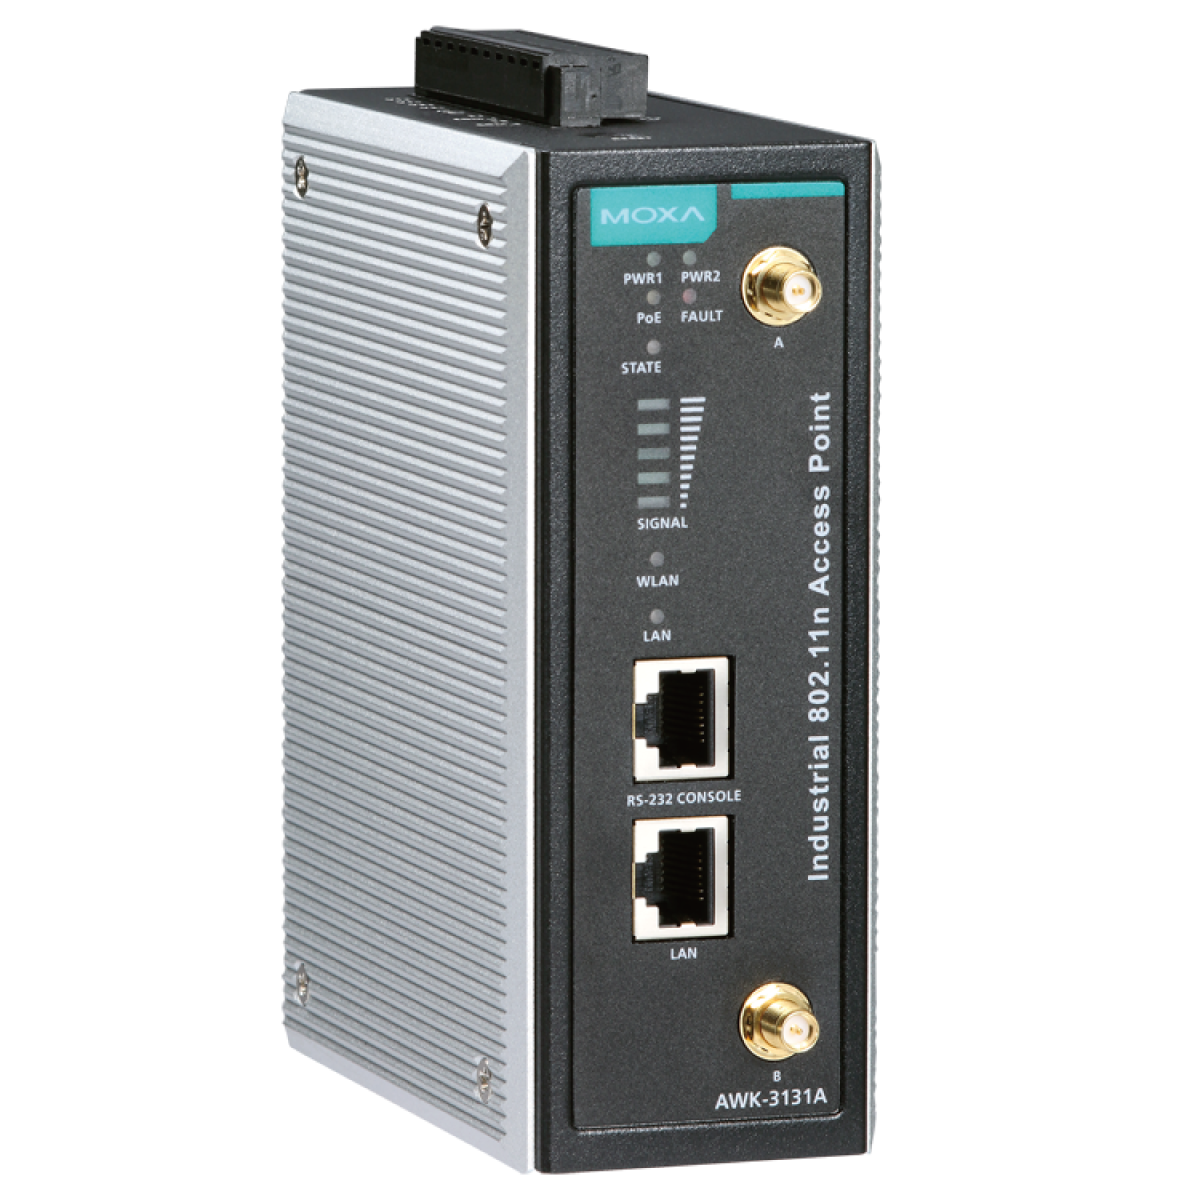 AWK-3131A Industrial IEEE 802.11a/b/g/n wireless AP/bridge/client